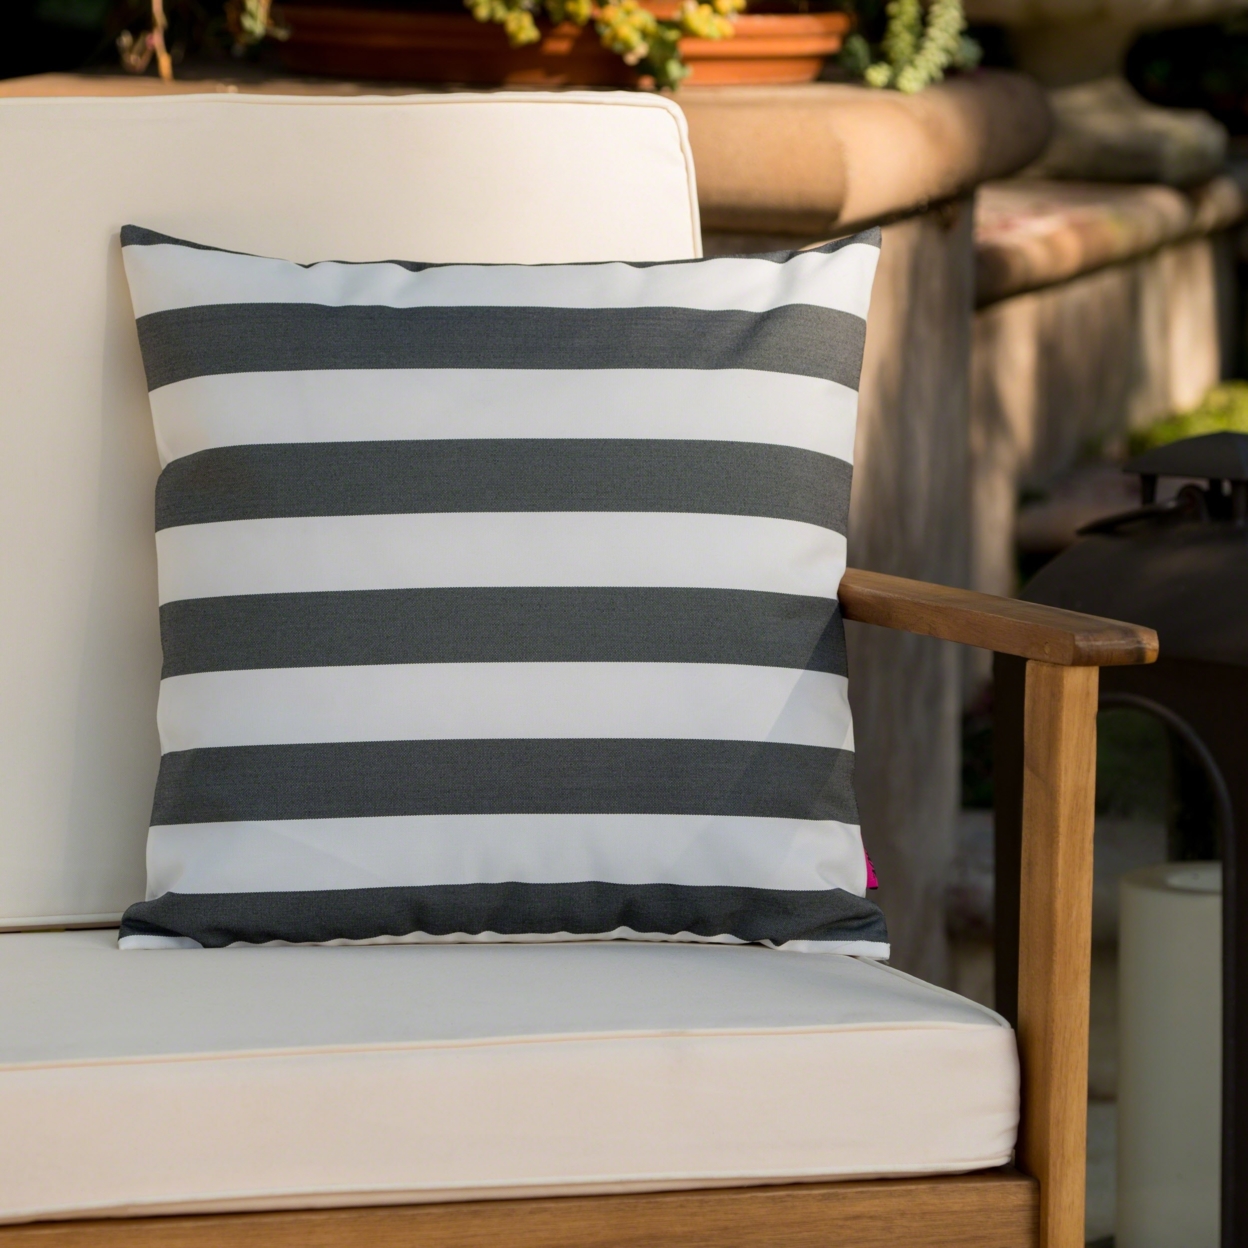 Coronado Outdoor Stripe Water Resistant Square Throw Pillow - Green/white, Set Of 2